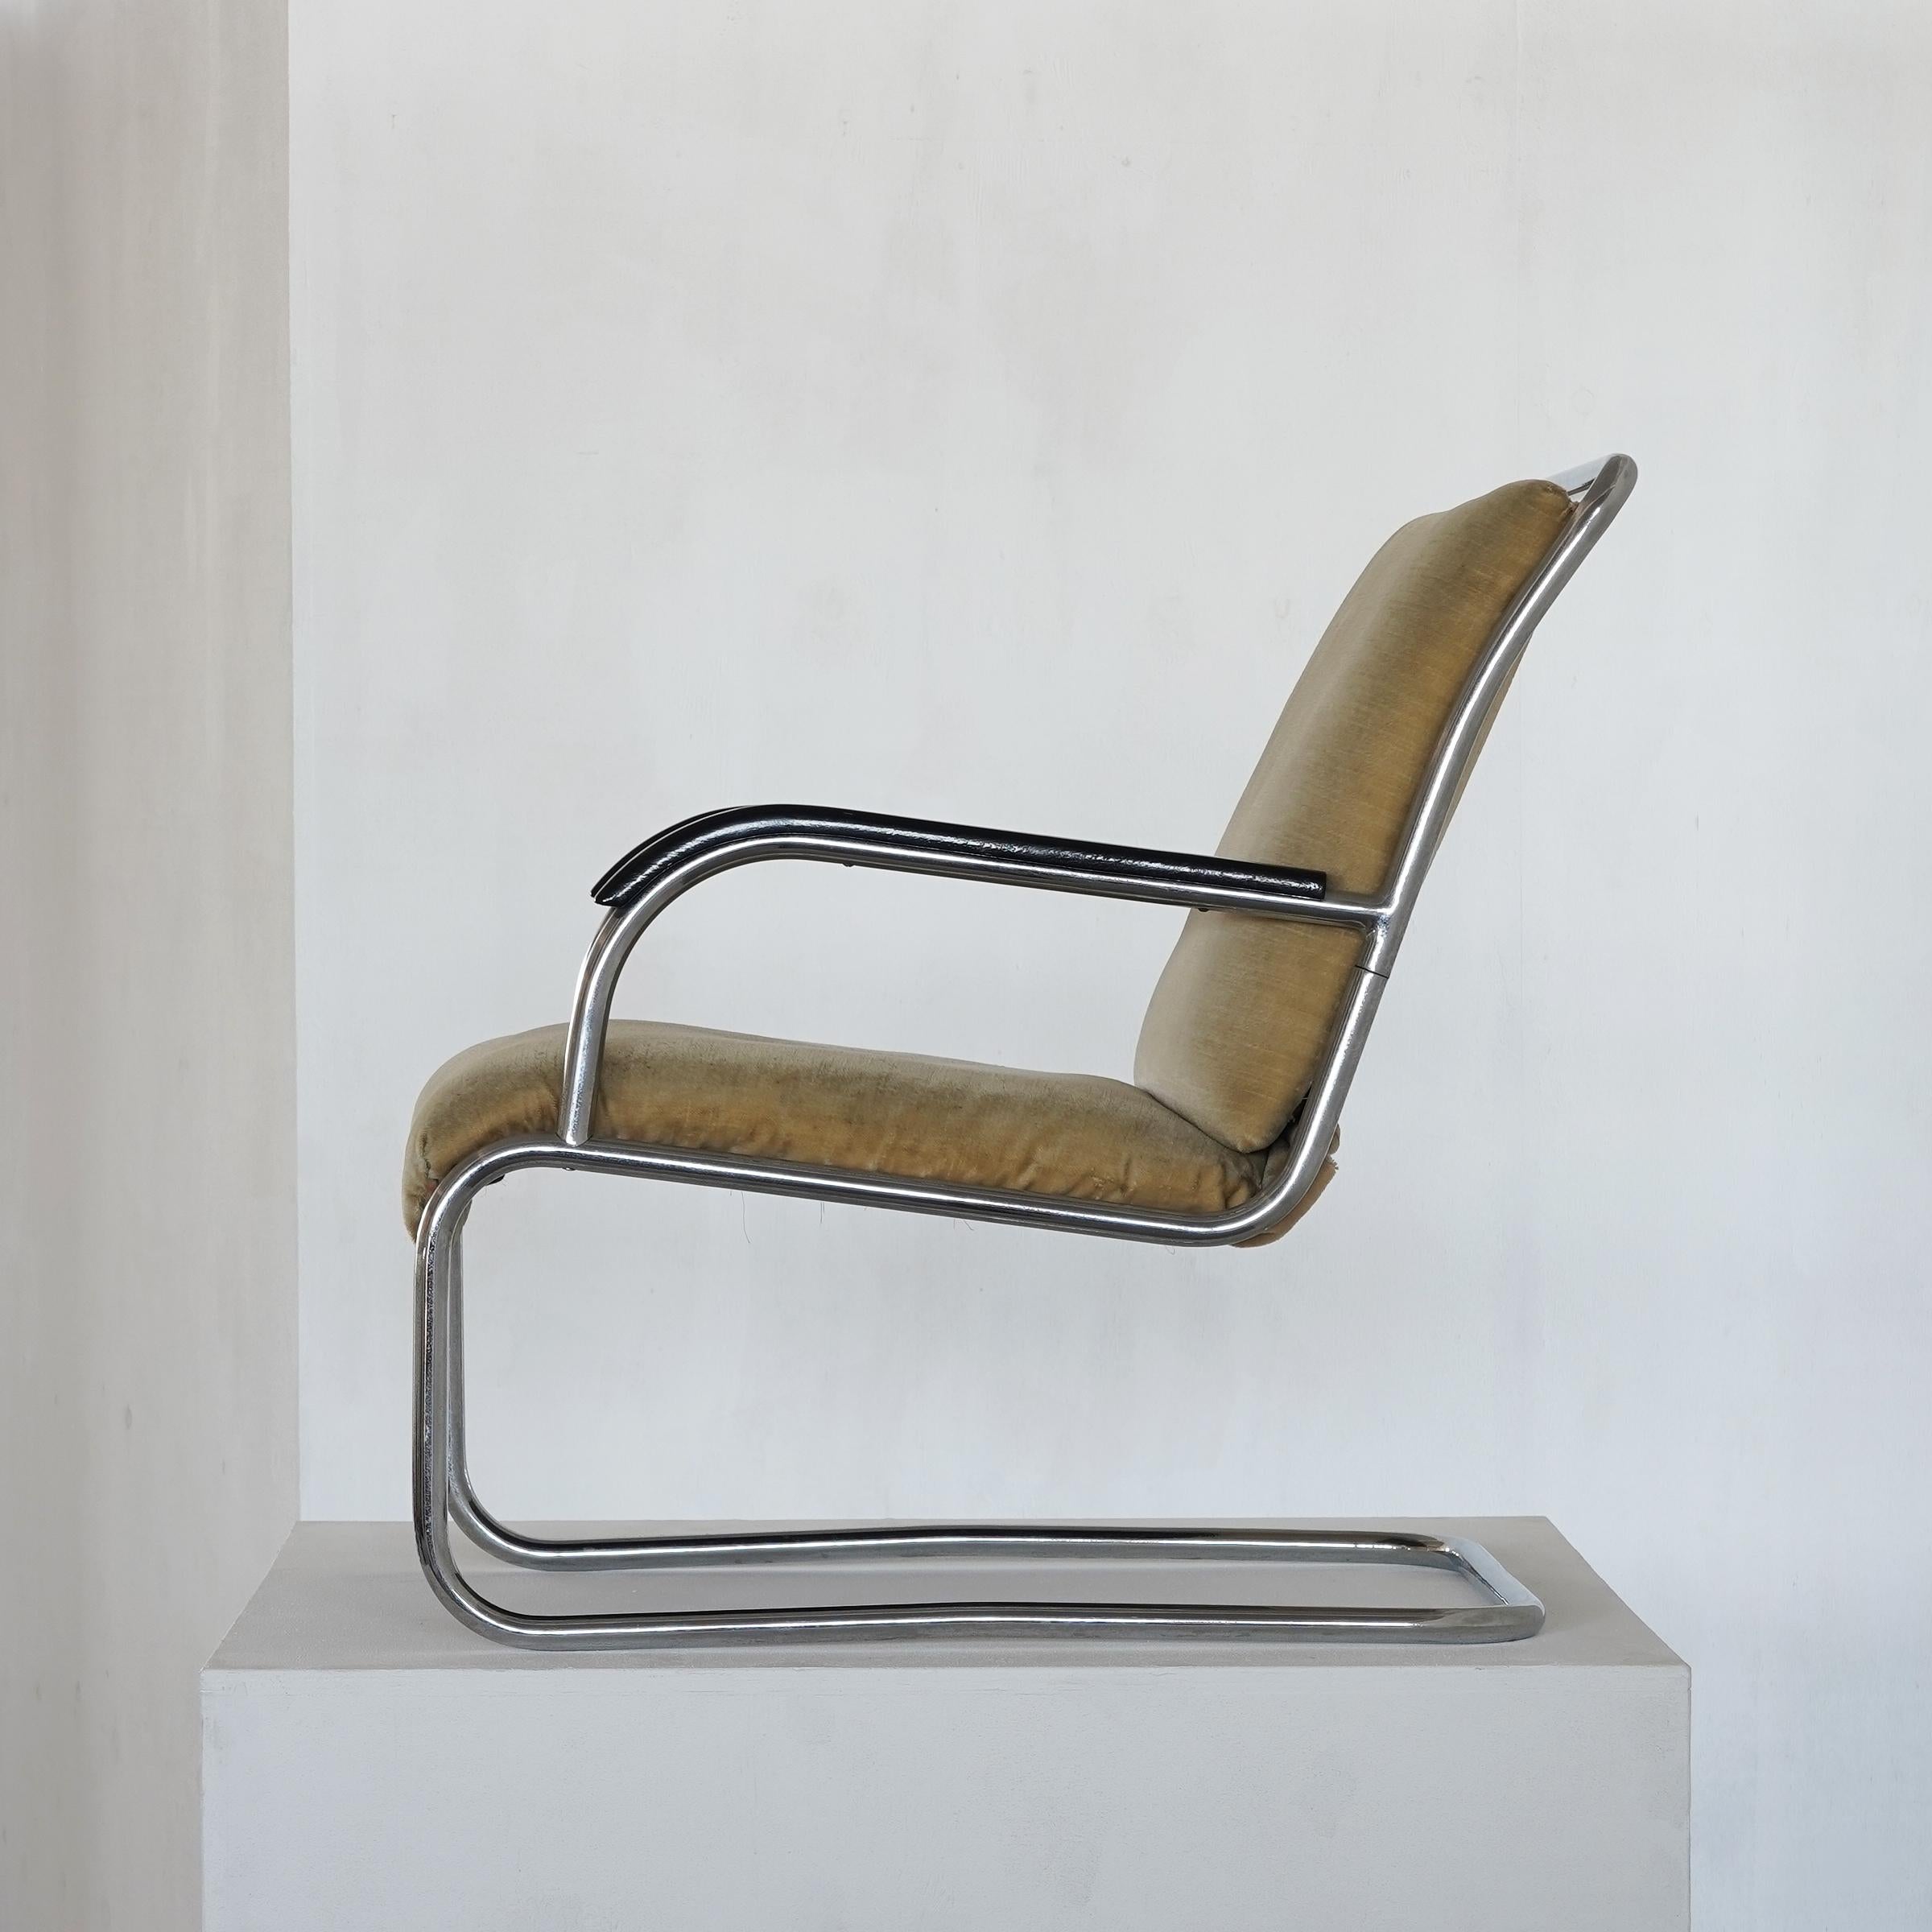 Très originale et rare chaise cantilever de Paul Schuitema.

Dans les années 1930, ce design tubulaire en porte-à-faux était très moderne et, grâce à ce design frappant, il l'est toujours - même en 2020. Il s'agit d'un exemple original de mobilier